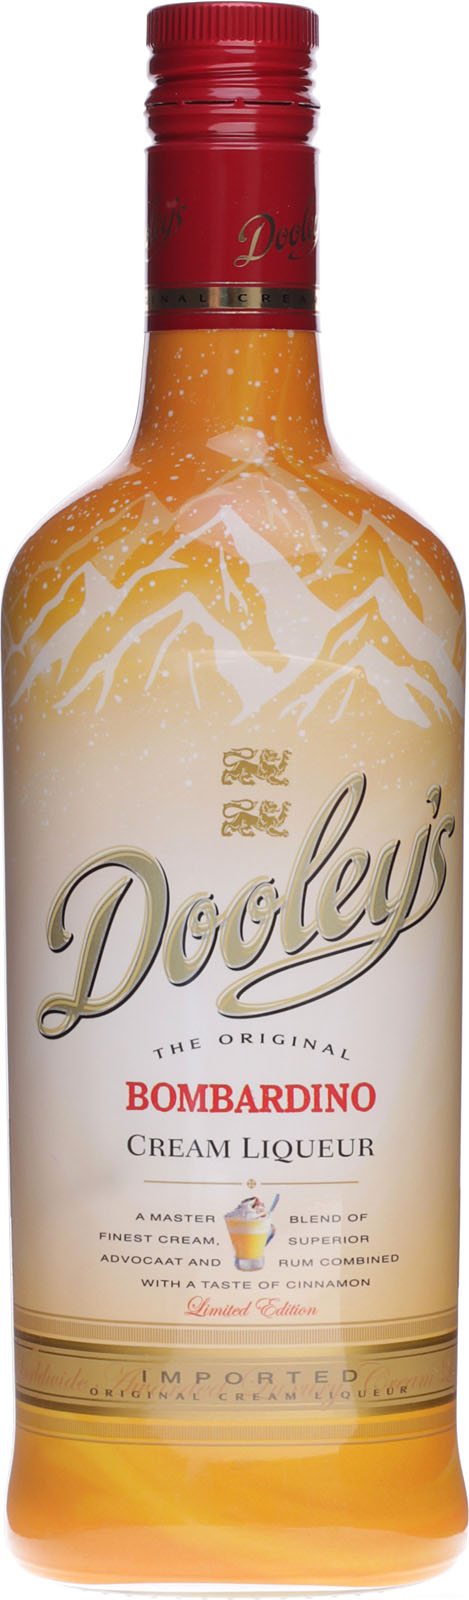 Dooleys Bombardino be Liqueur Cream und günstig schnell